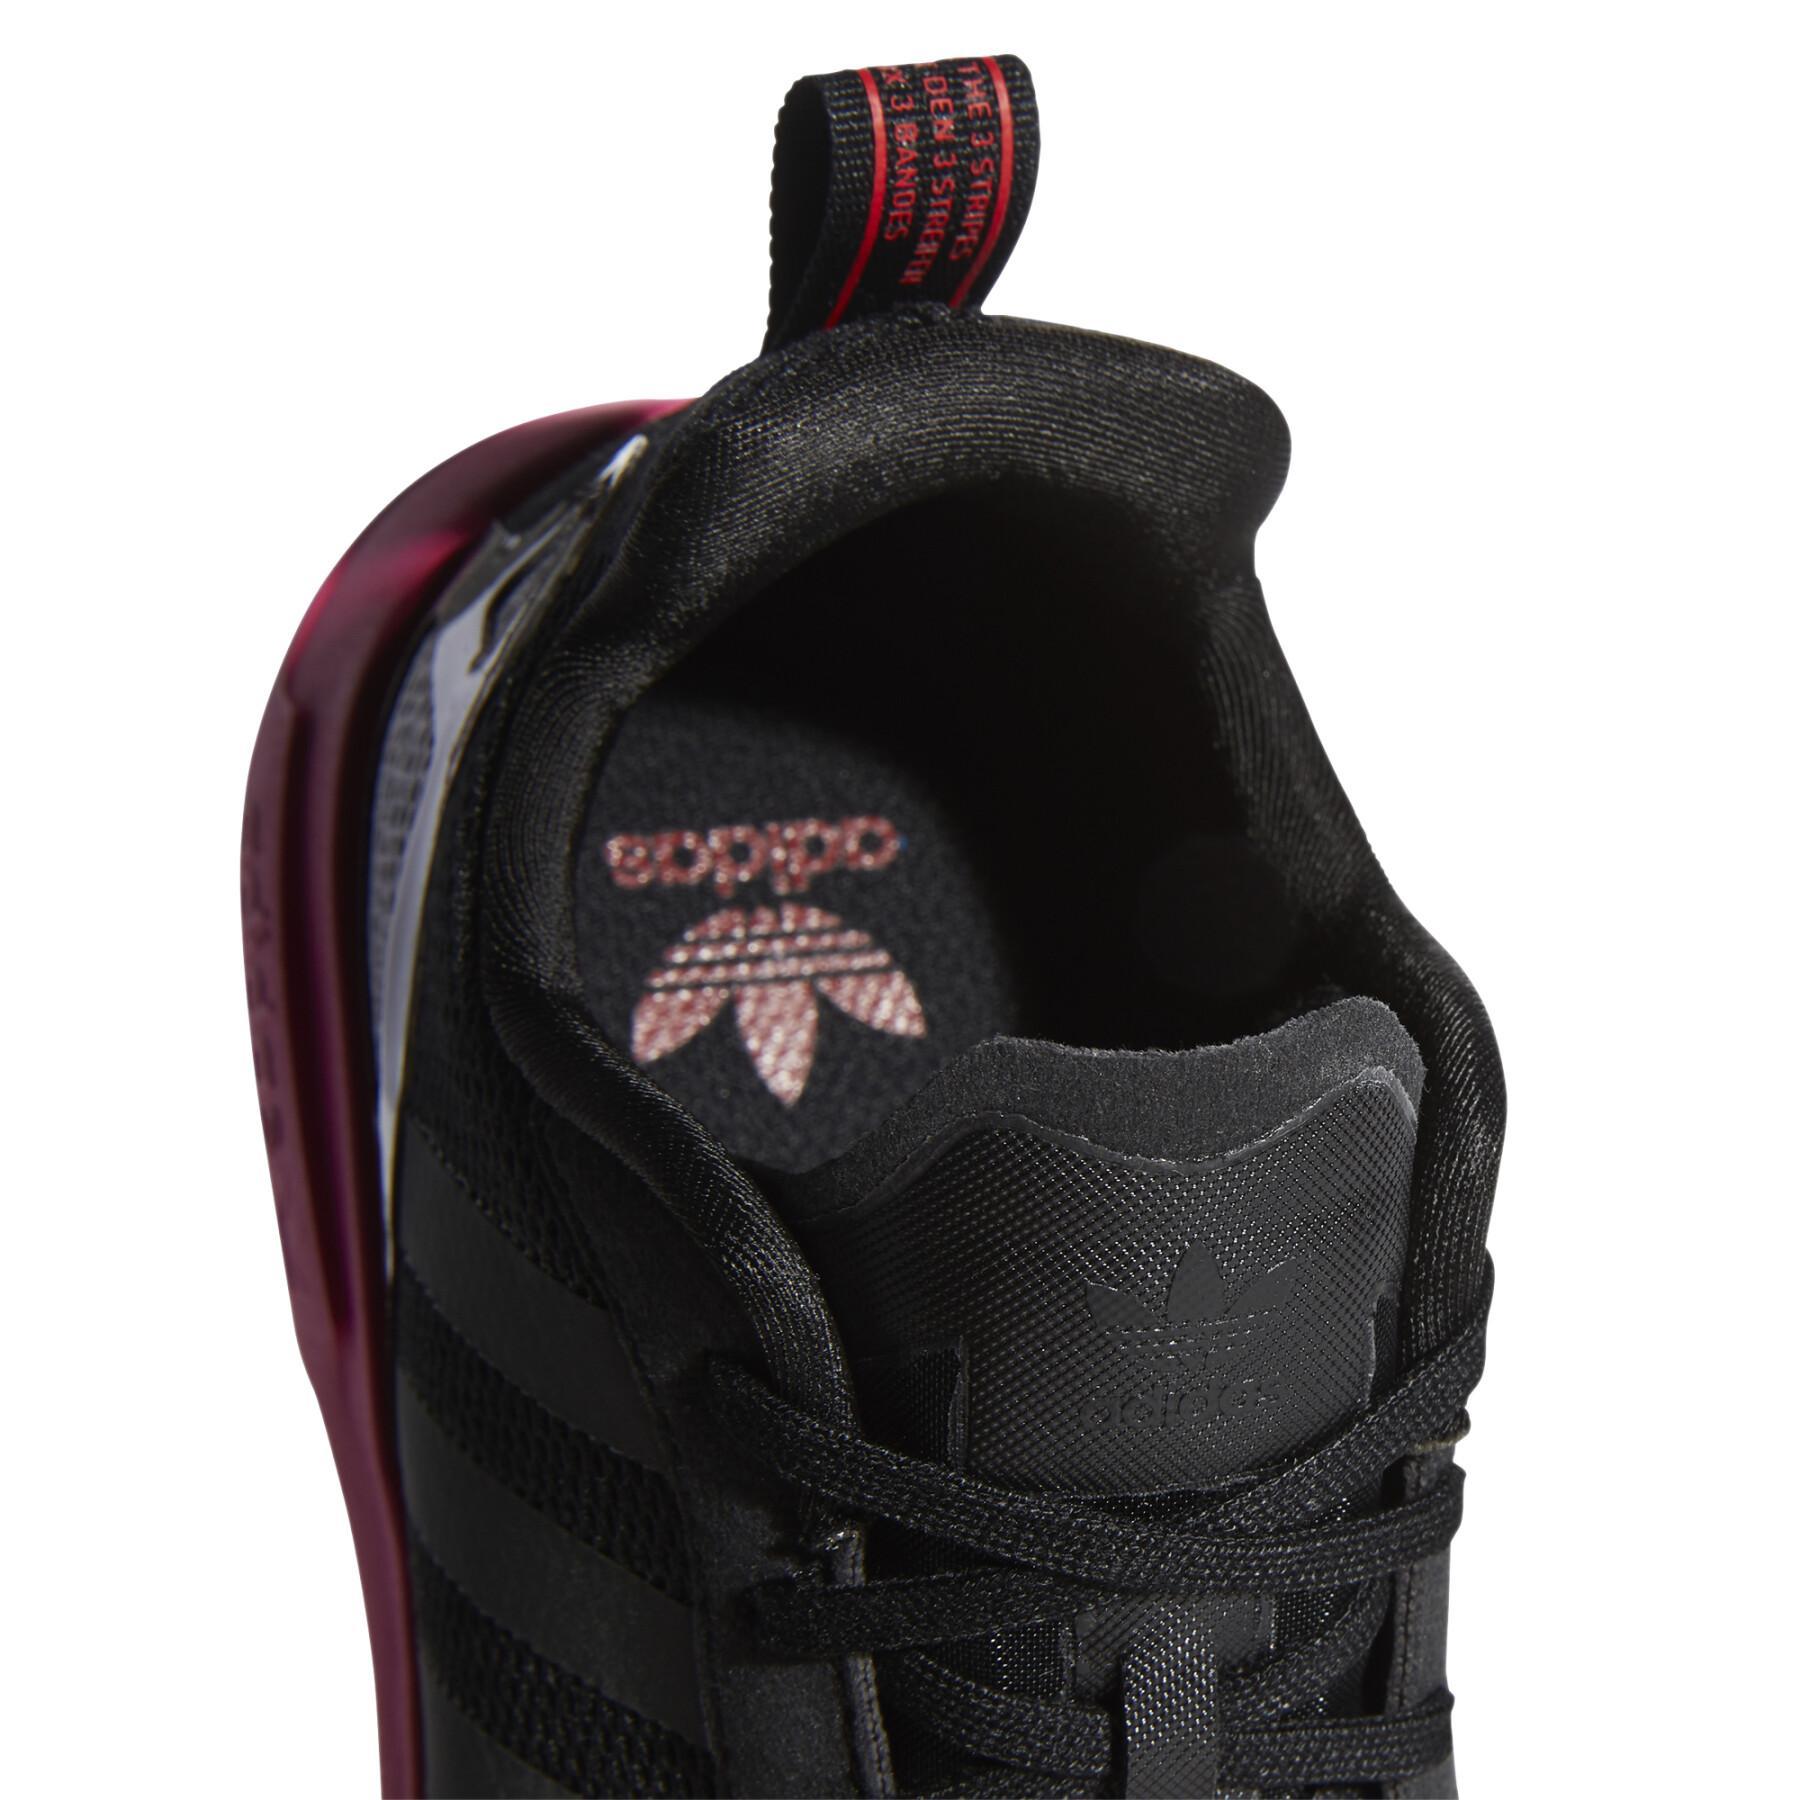 Kid sneakers adidas Originals ZX 2K Flux